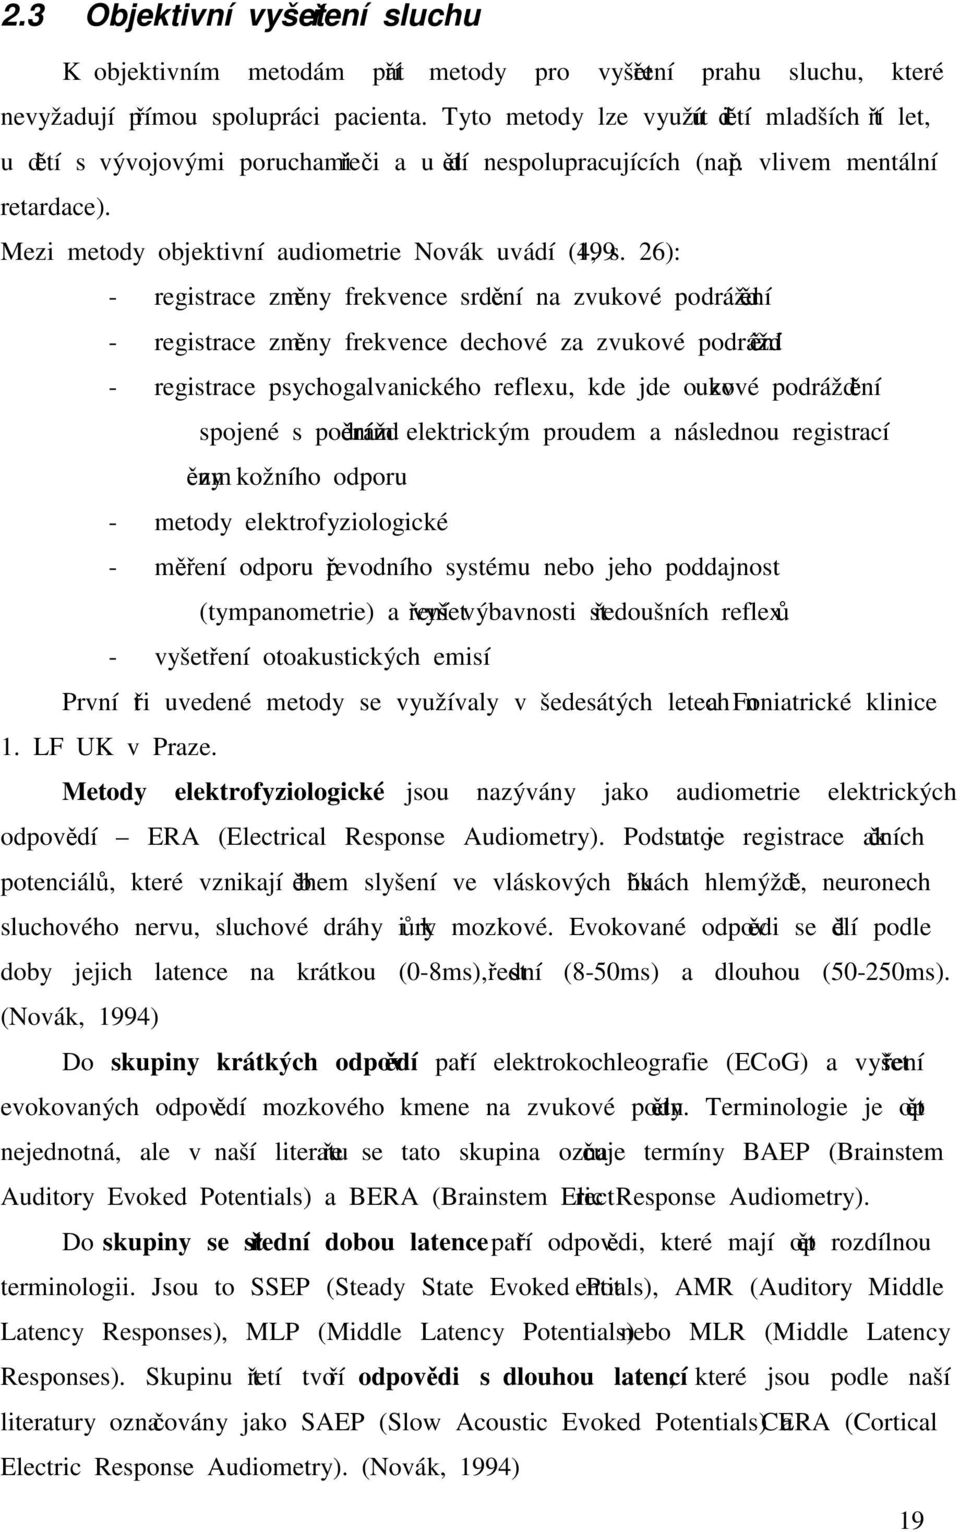 Mezi metody objektivní audiometrie Novák uvádí (1994, s.